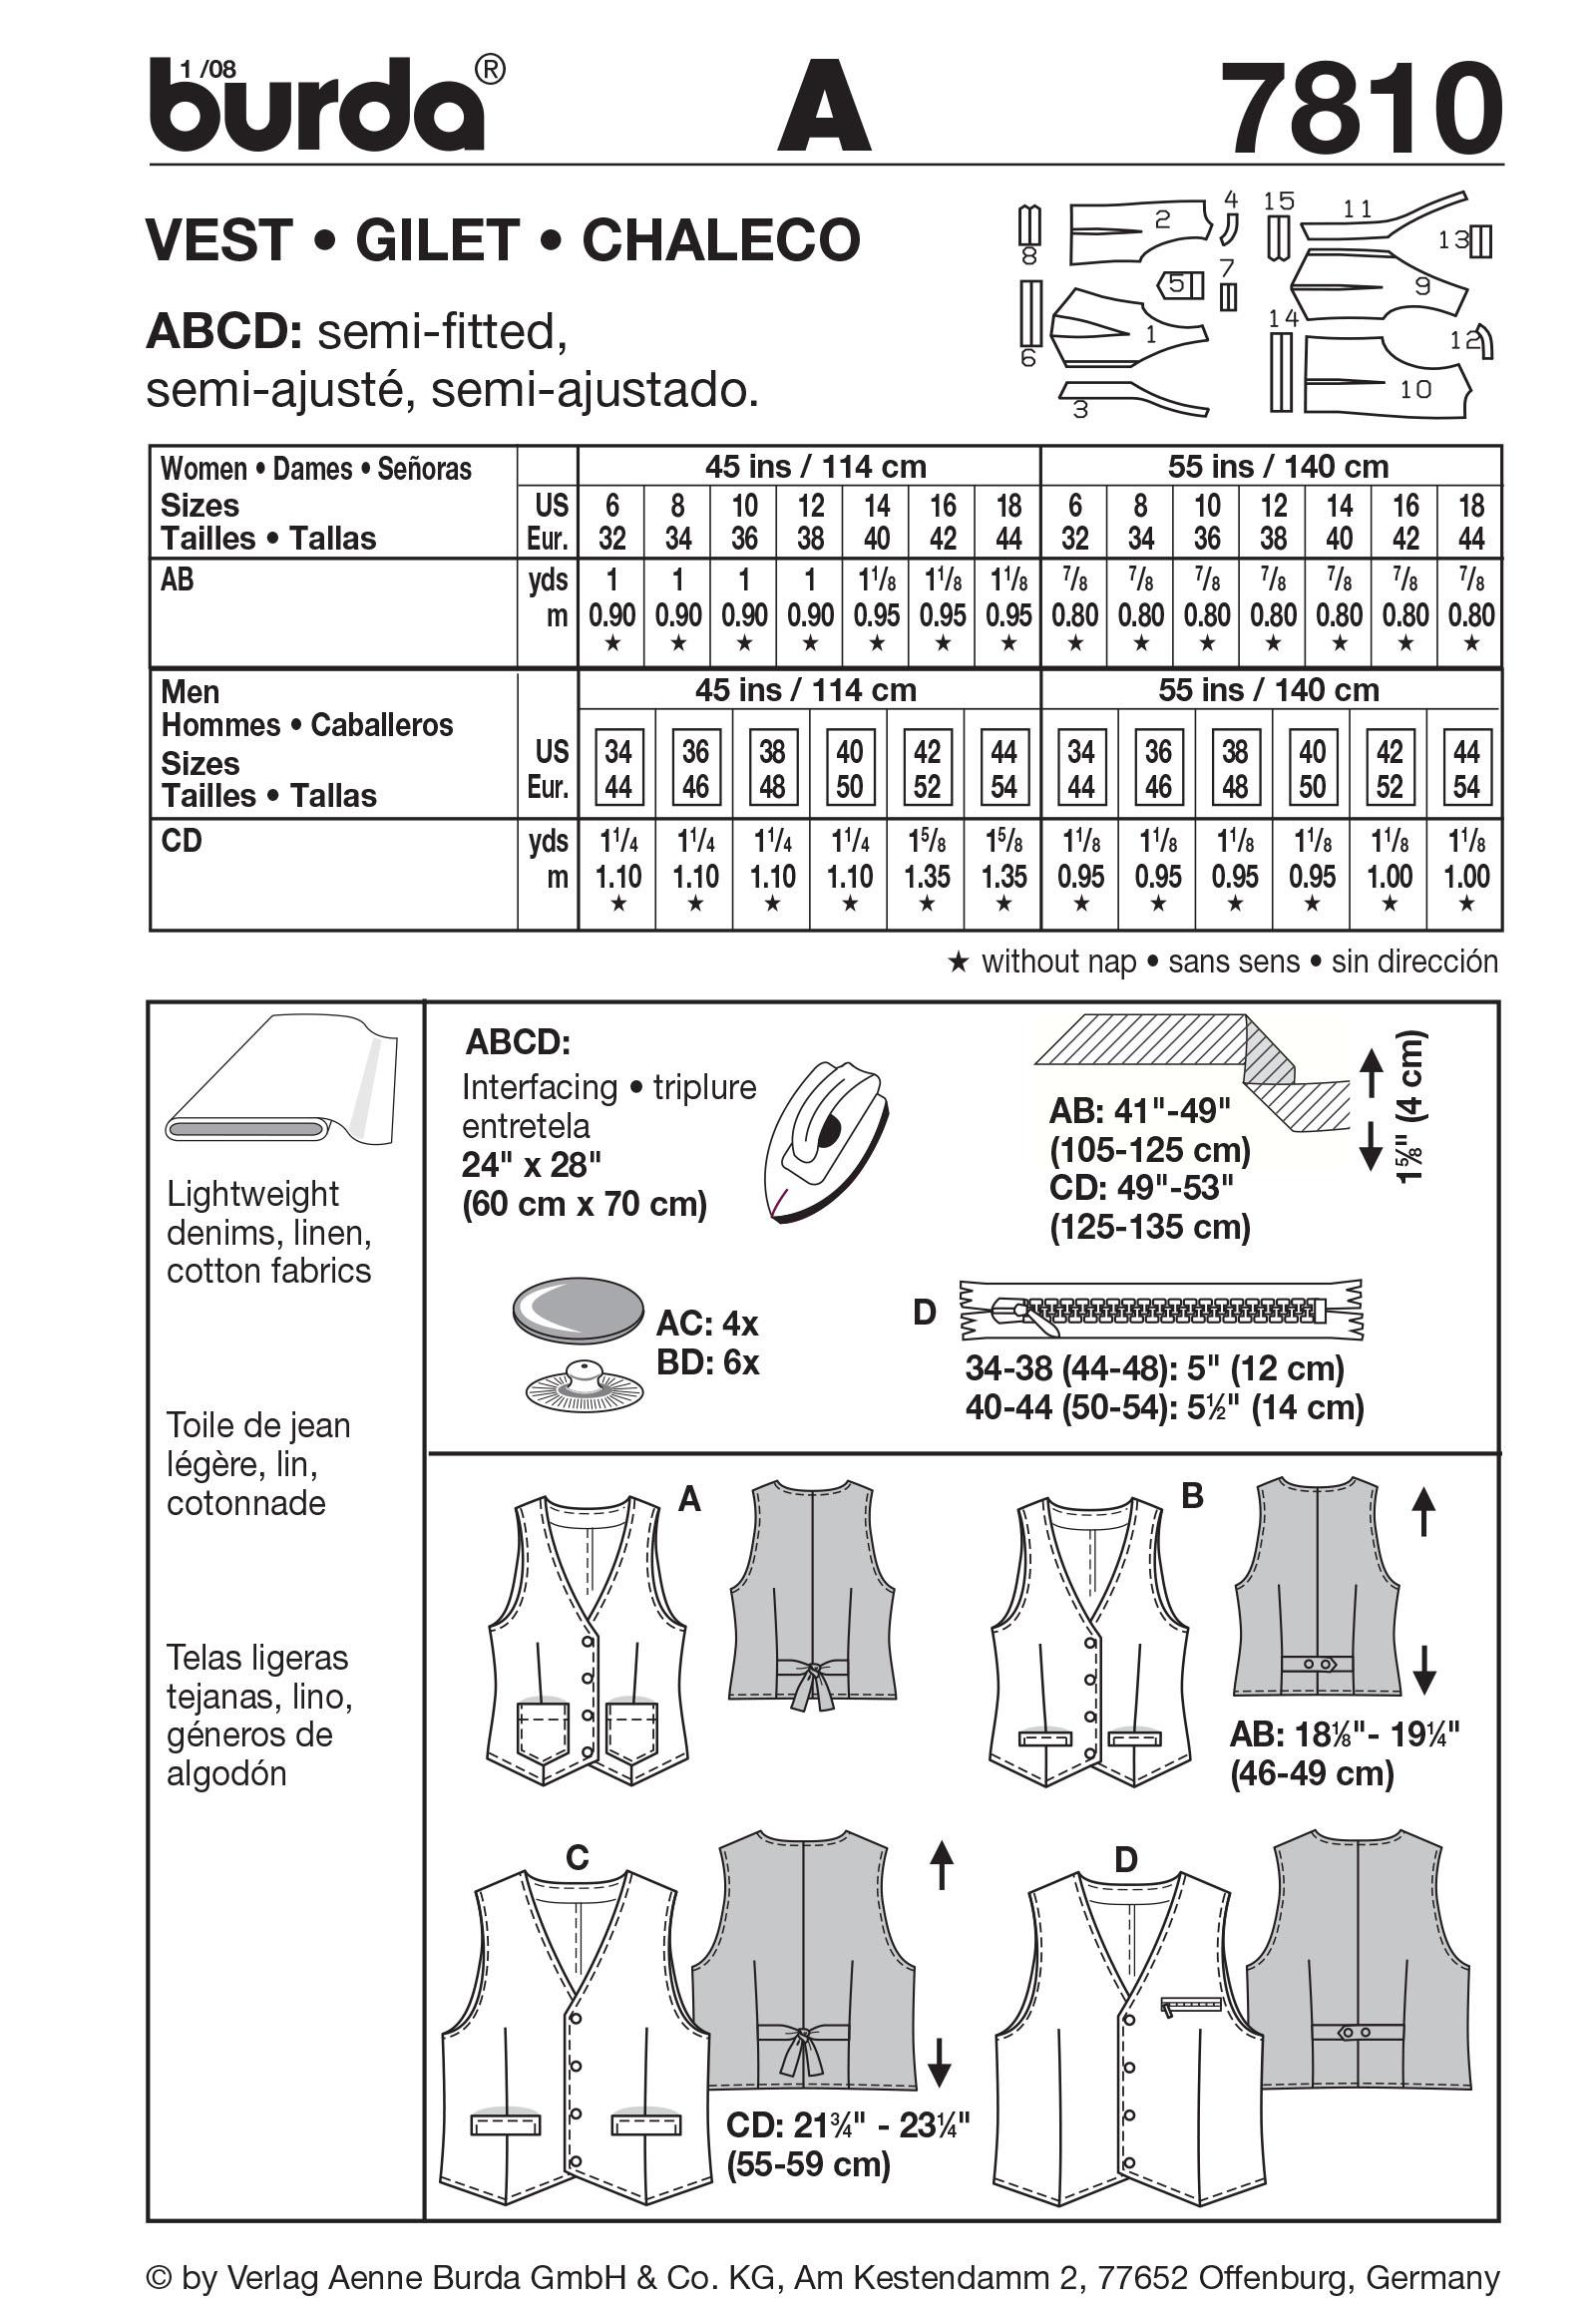 Burda B7810 Vest Sewing Pattern